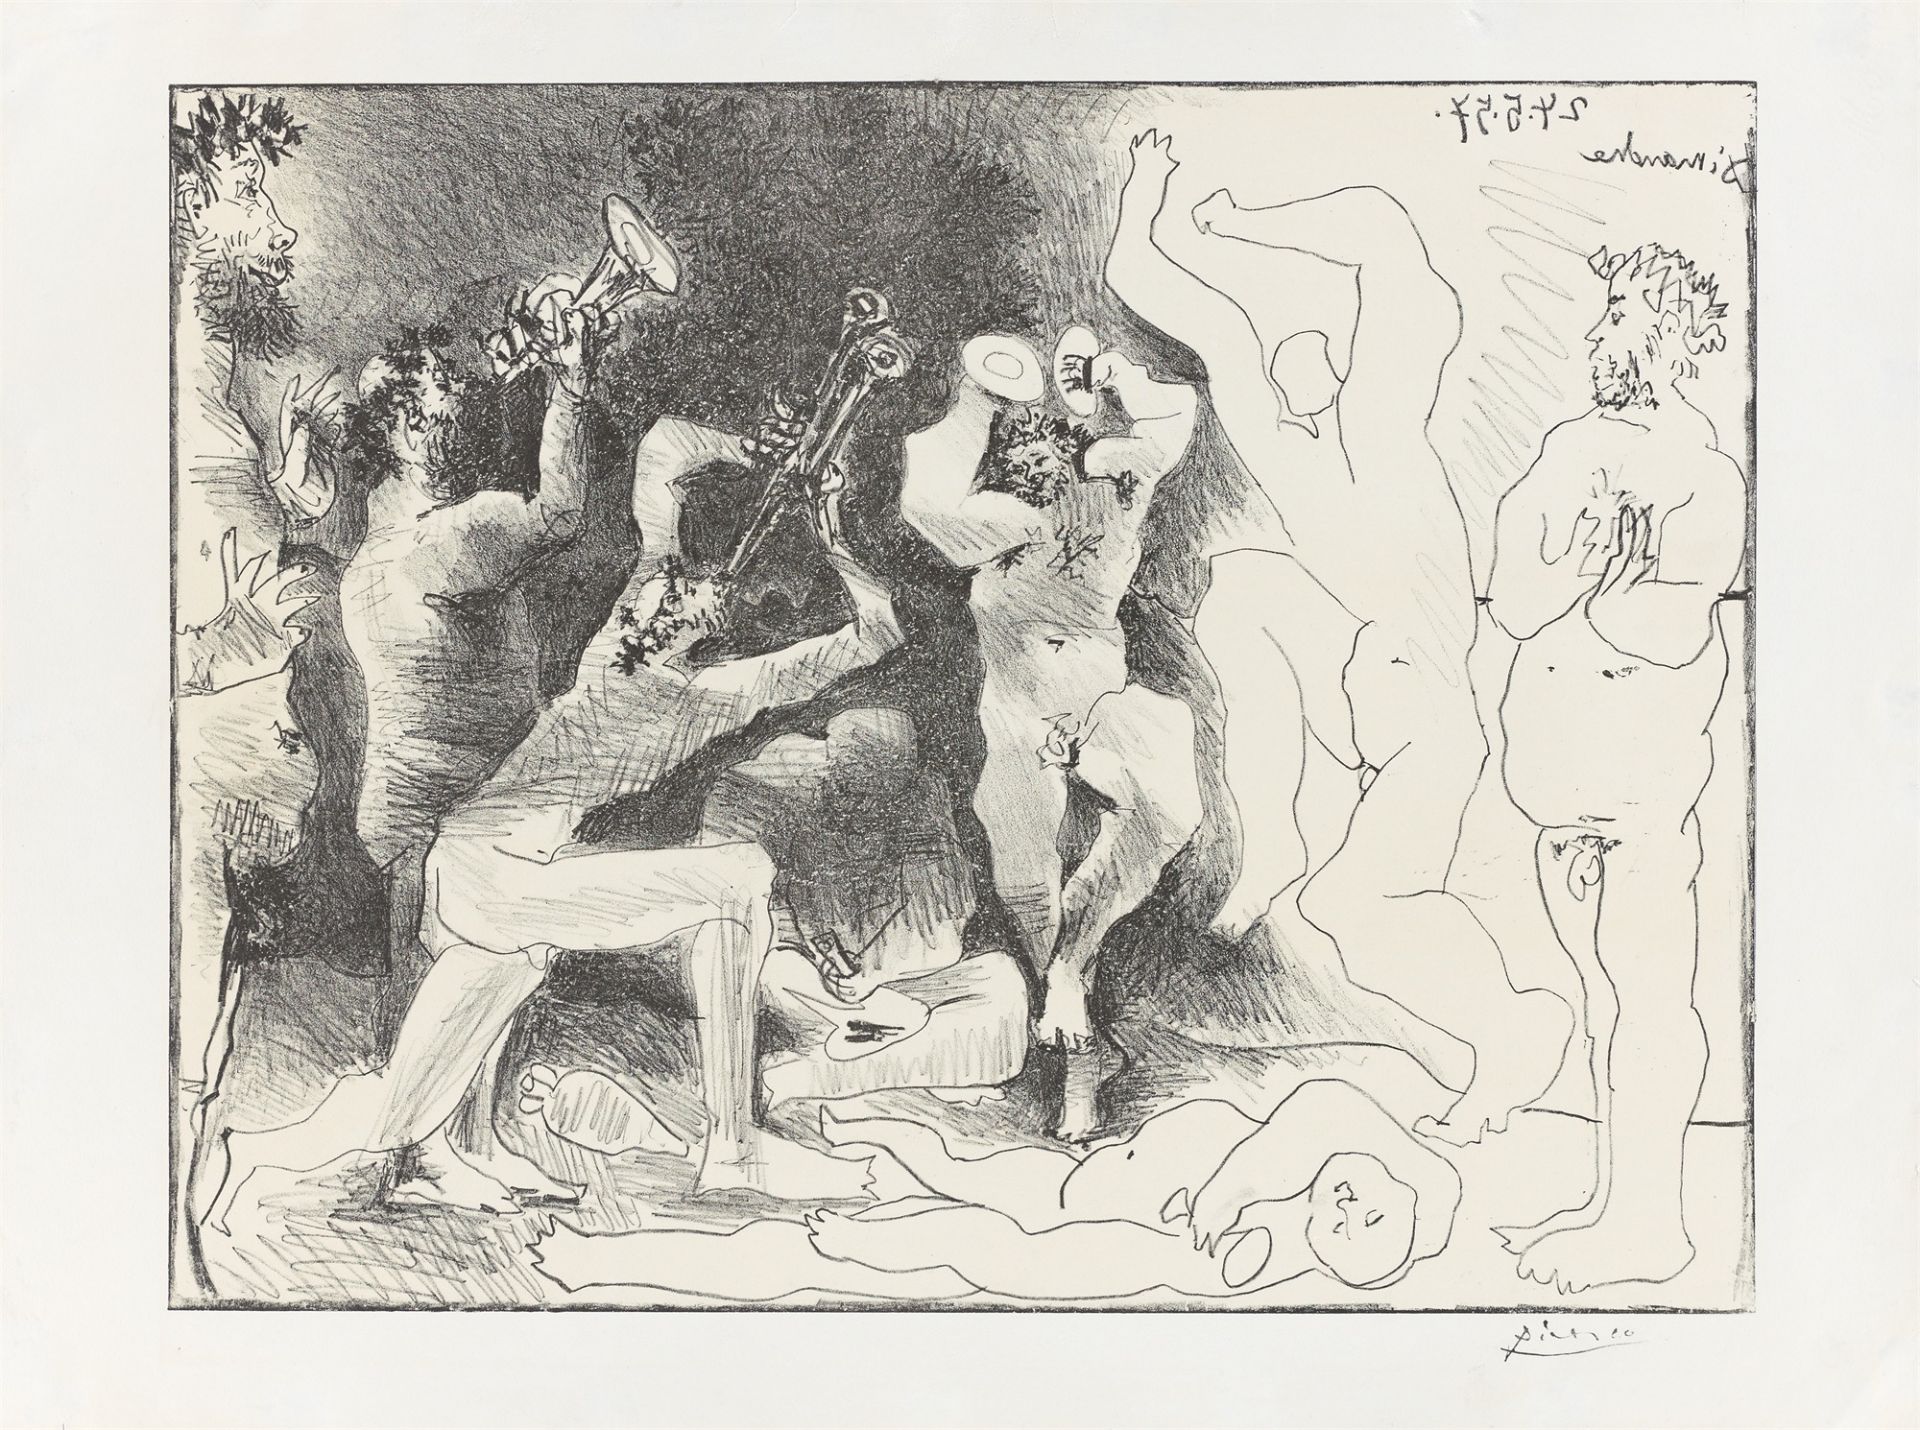 Pablo Picasso. ”La danse des faunes”. 1957